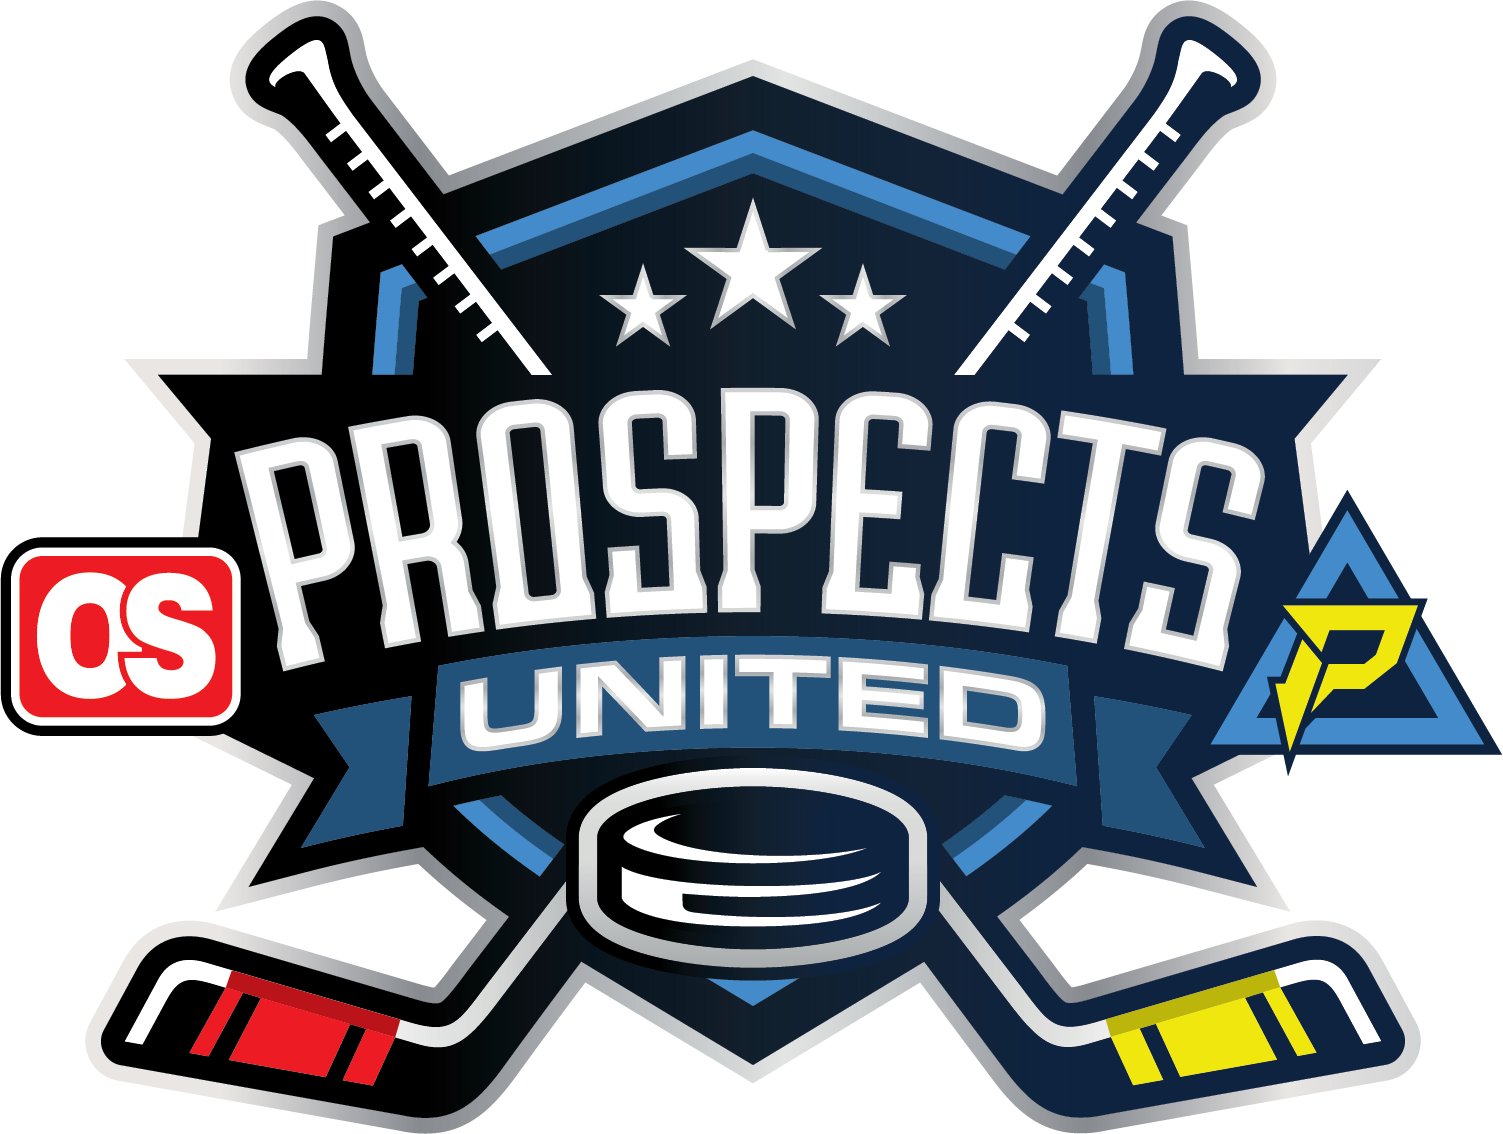 PIP_OS_Prospects United Logo_v5.